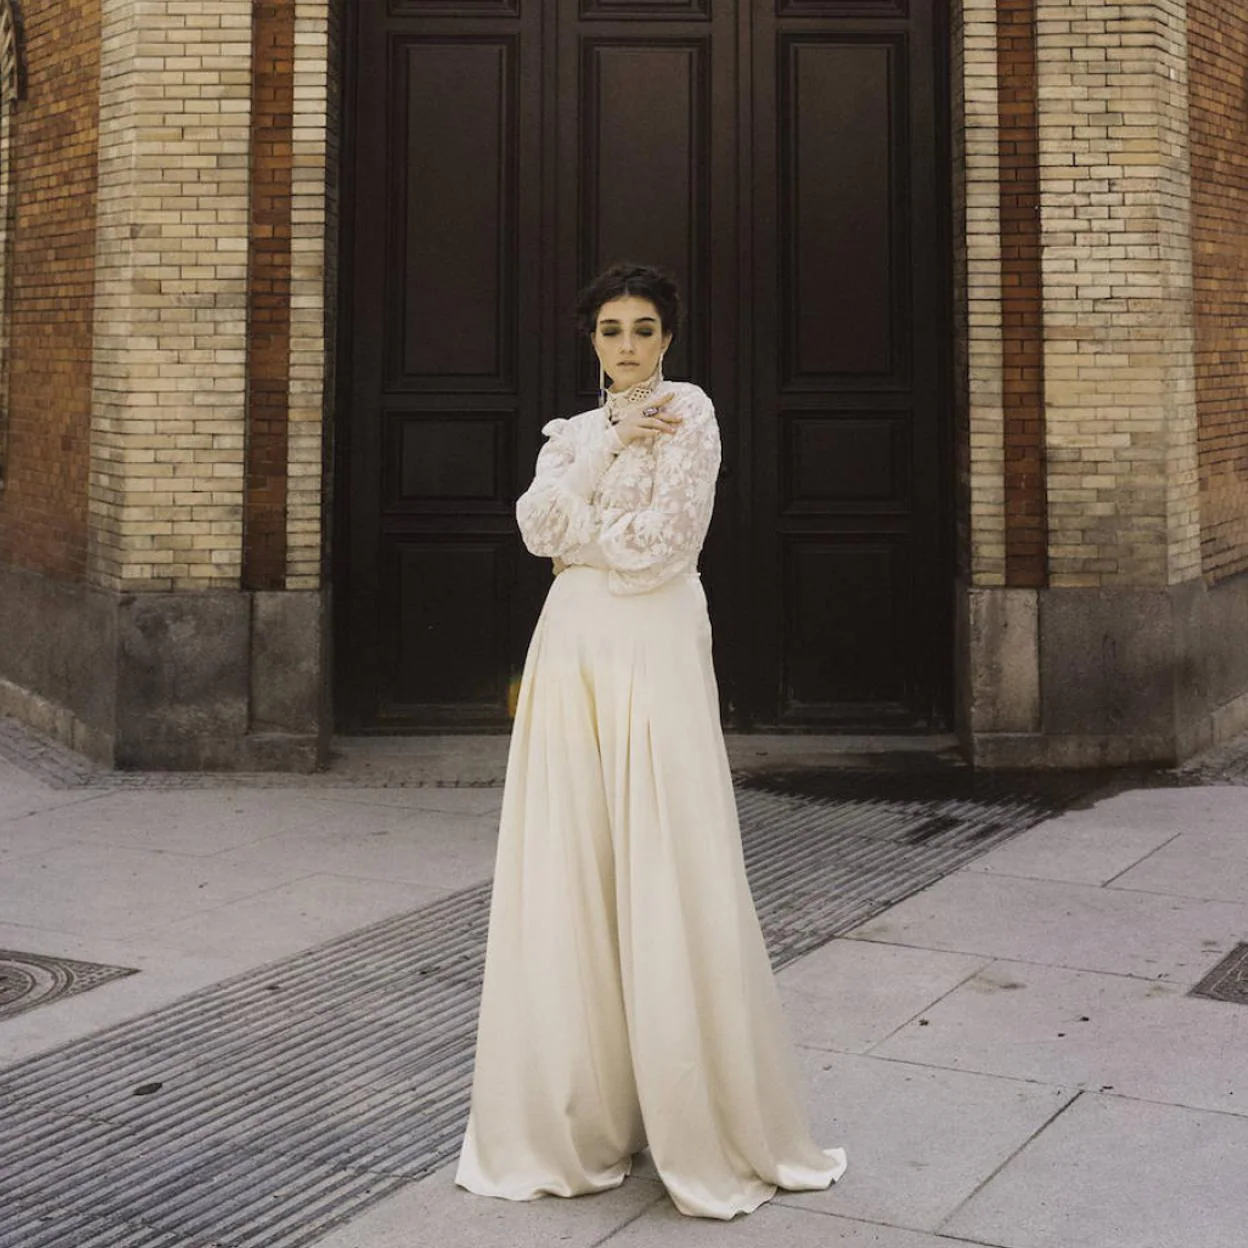 Olvida el vestido de novia: consigue un look nupcial y cómodo con un body blanco de encaje | Mujer Hoy